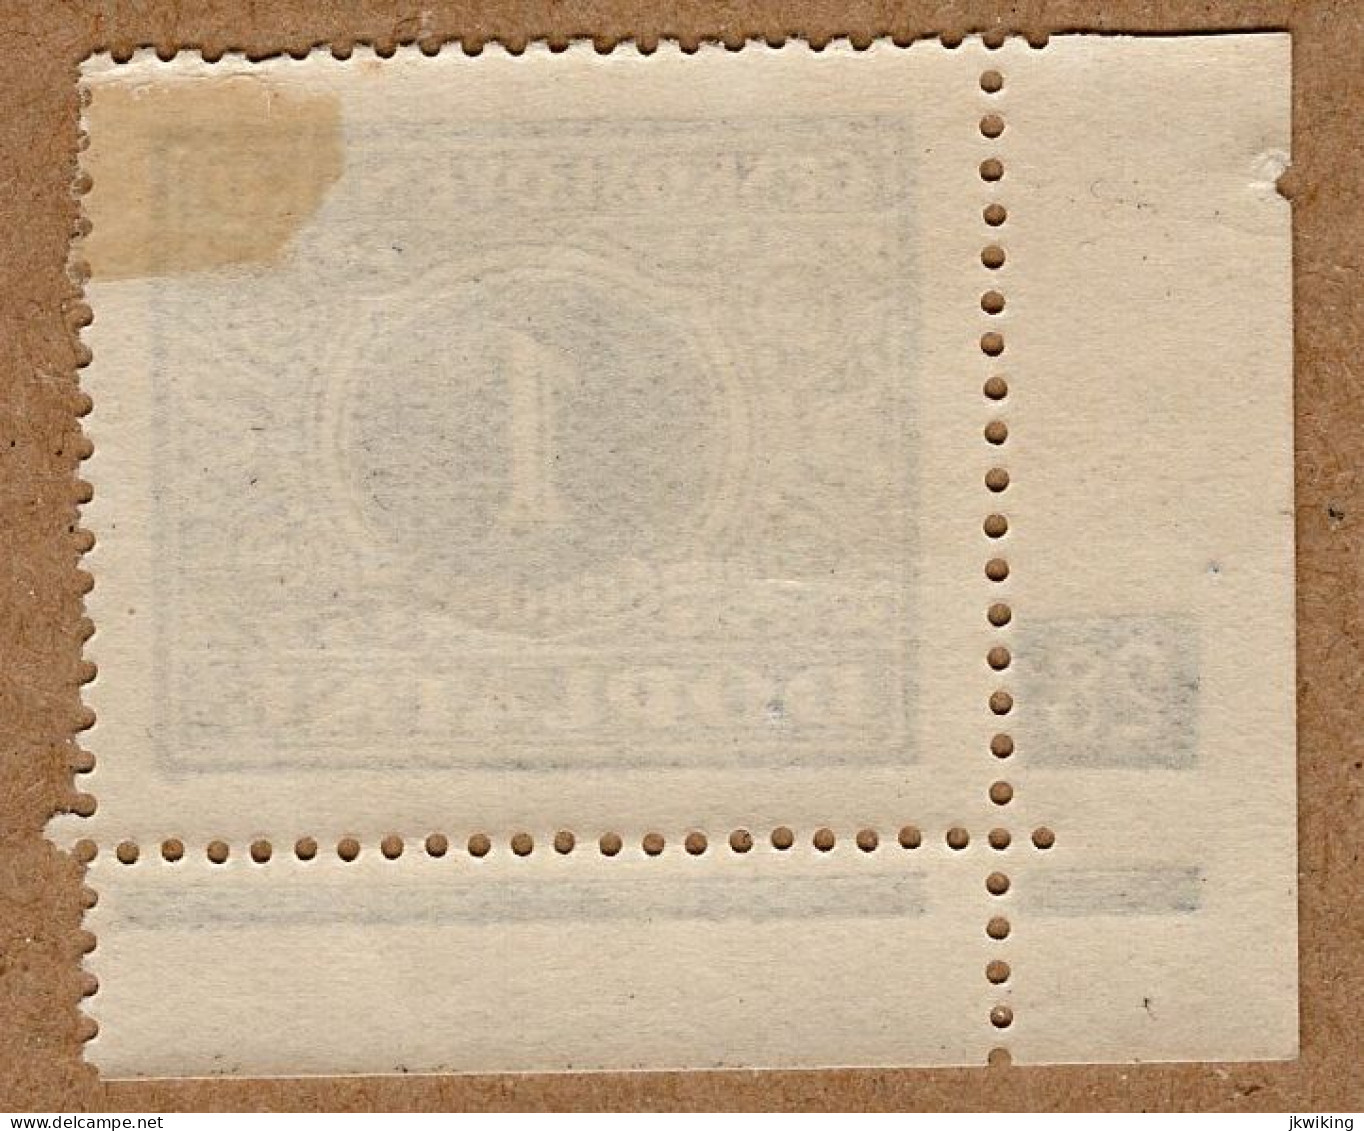 1928 - Doplatní - Definitivní Vydání - č. DL62 - Deskové číslo - Neufs